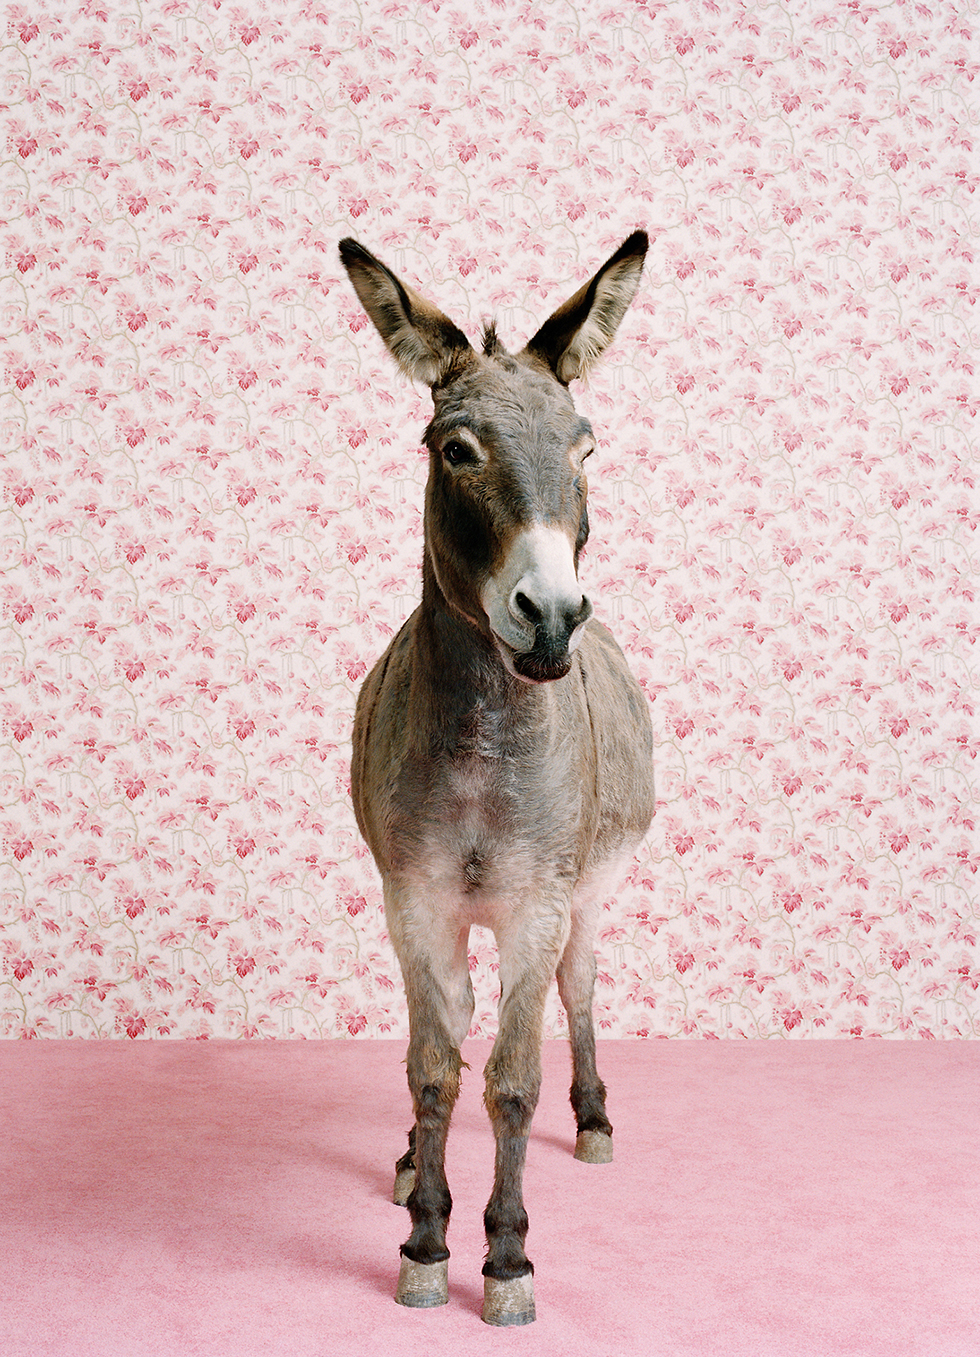 Donkey 2 © Catherine Ledner, www.lumas.com